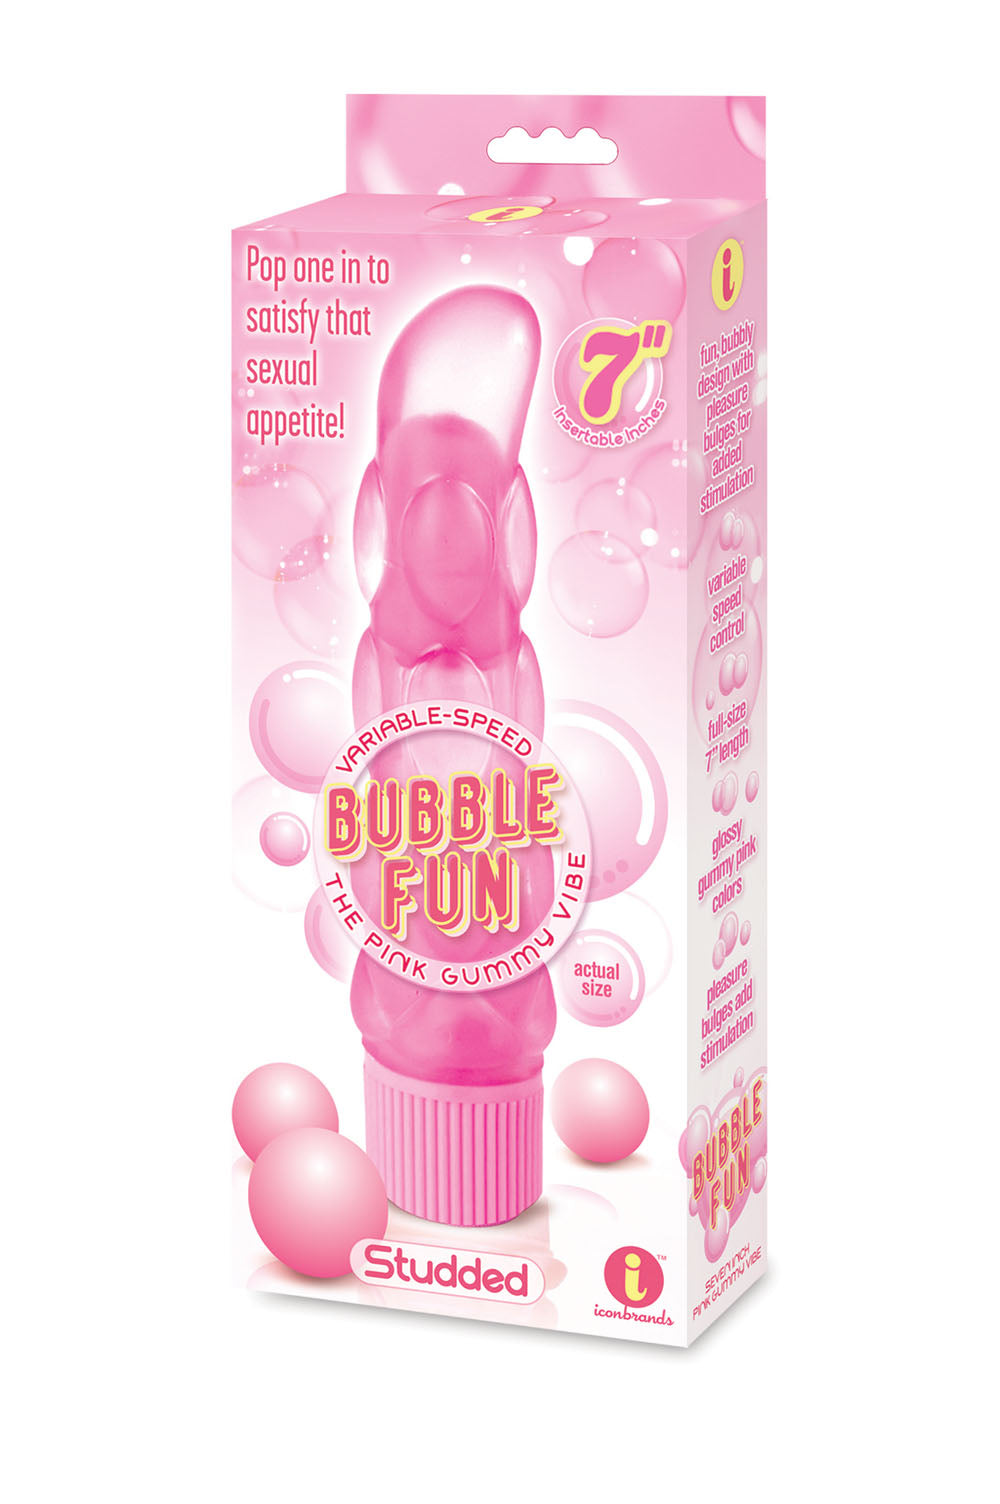 The 9's Bubble Fun